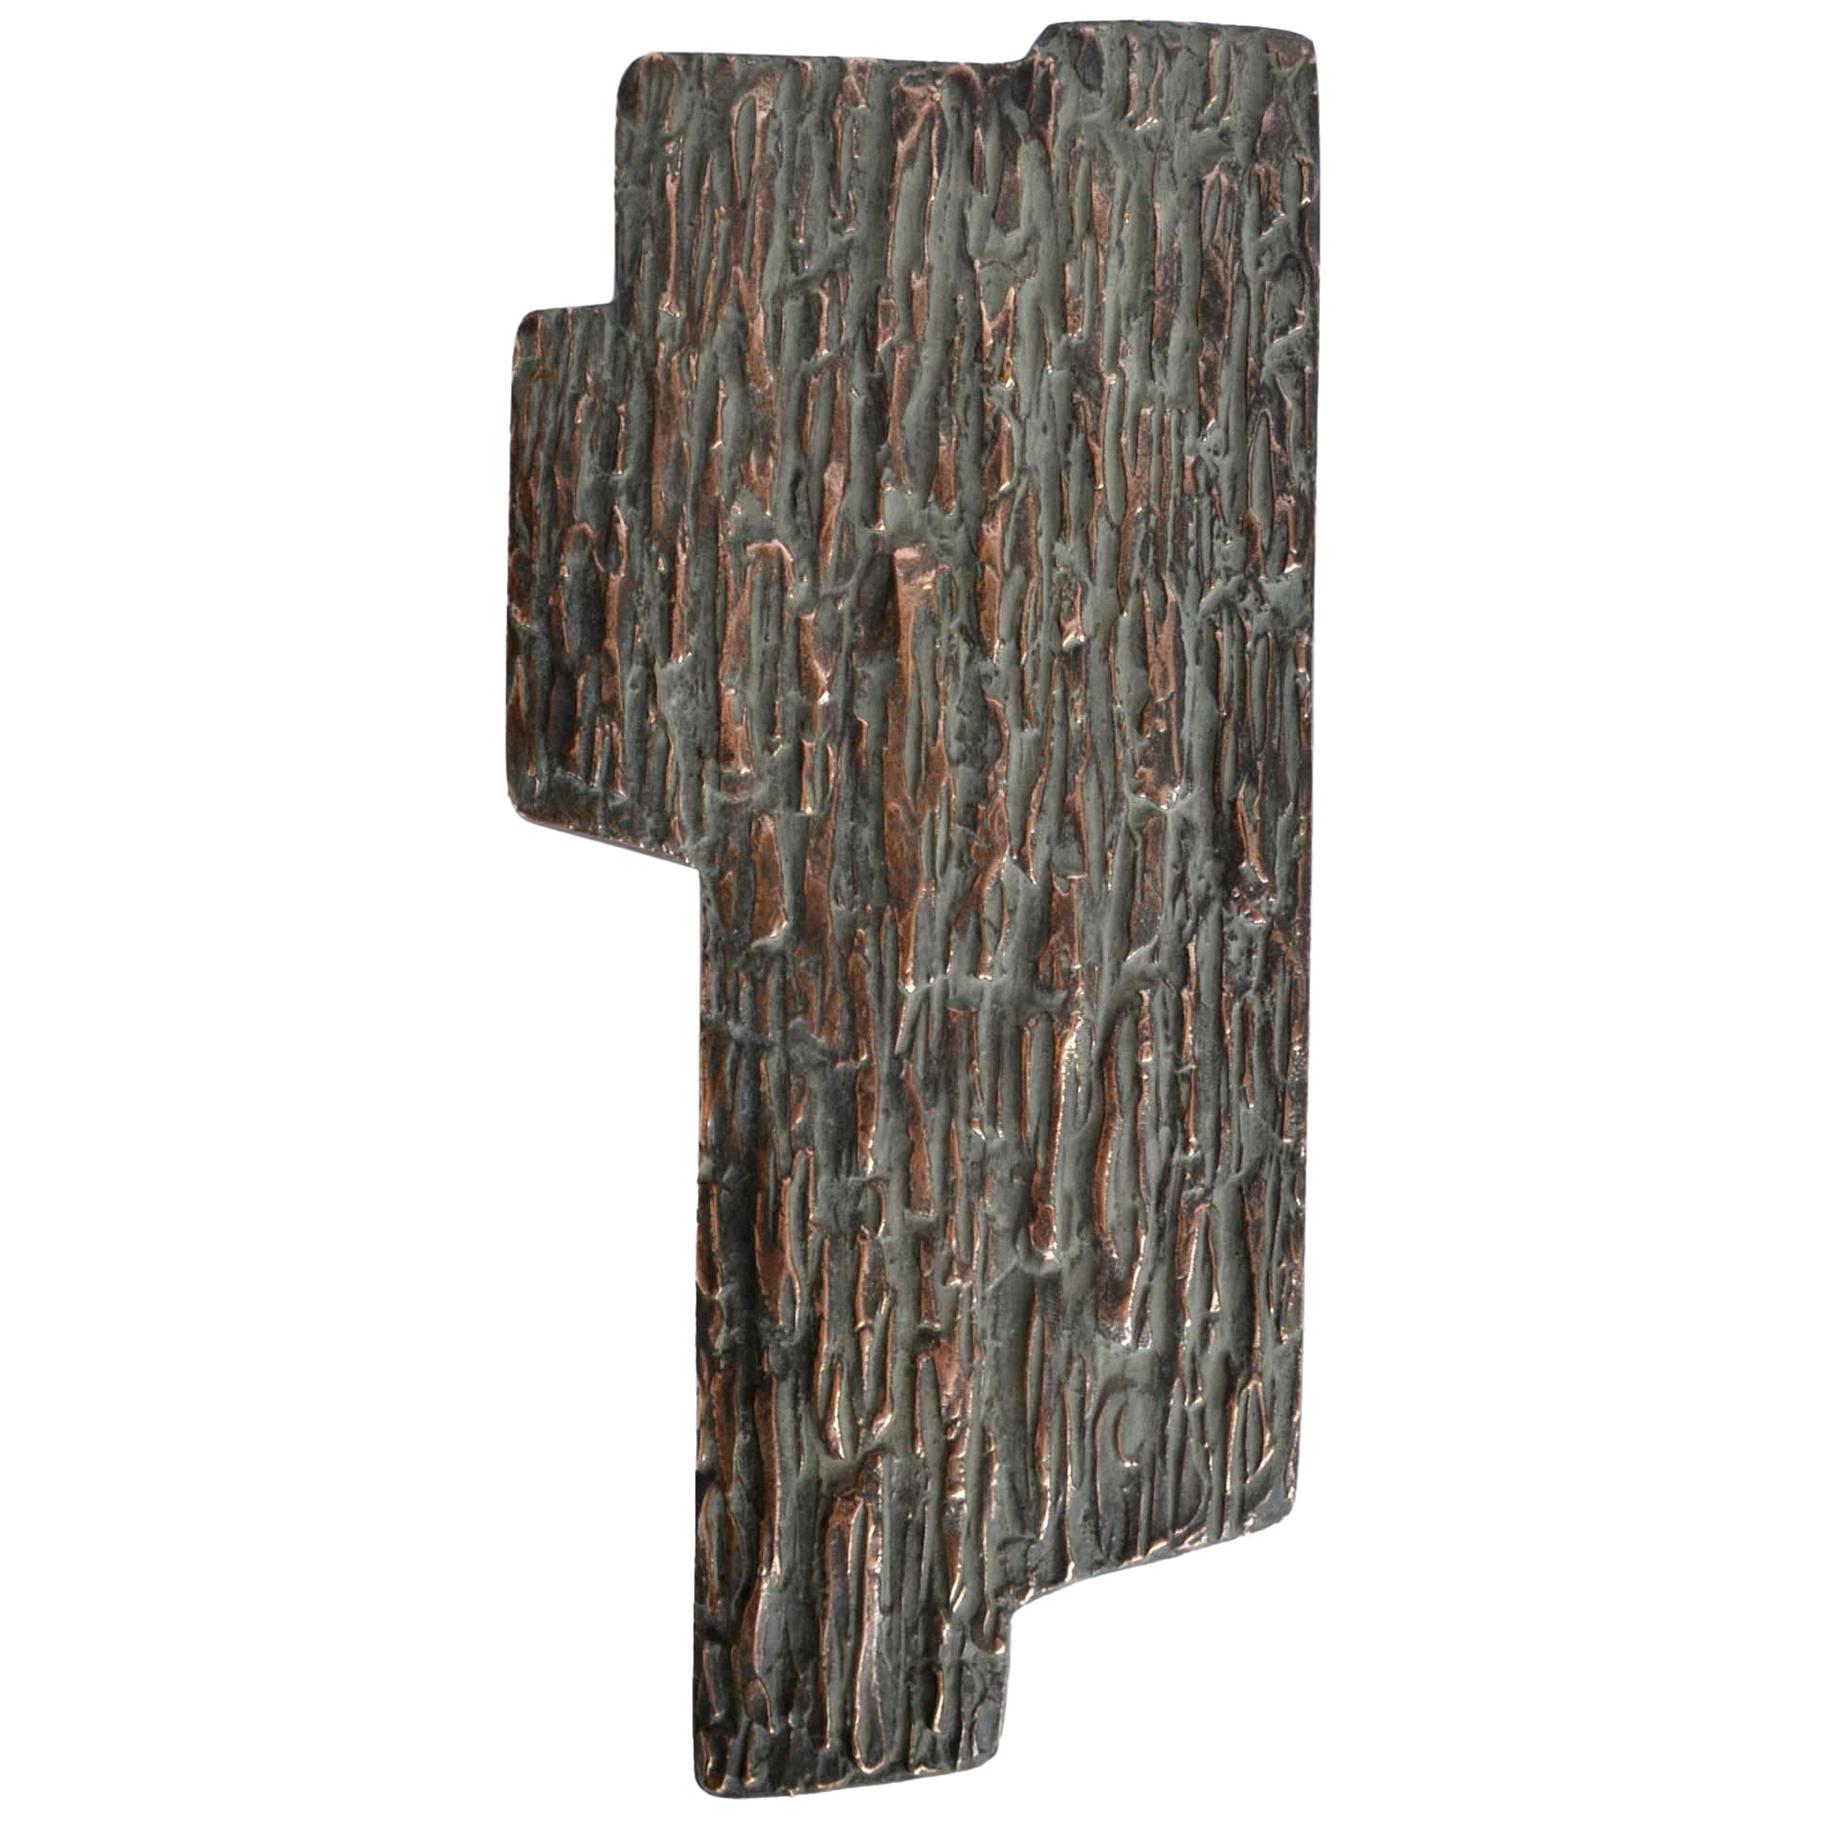 Push & Pull Bronze Door Handle Free Form with Brutalist Relief